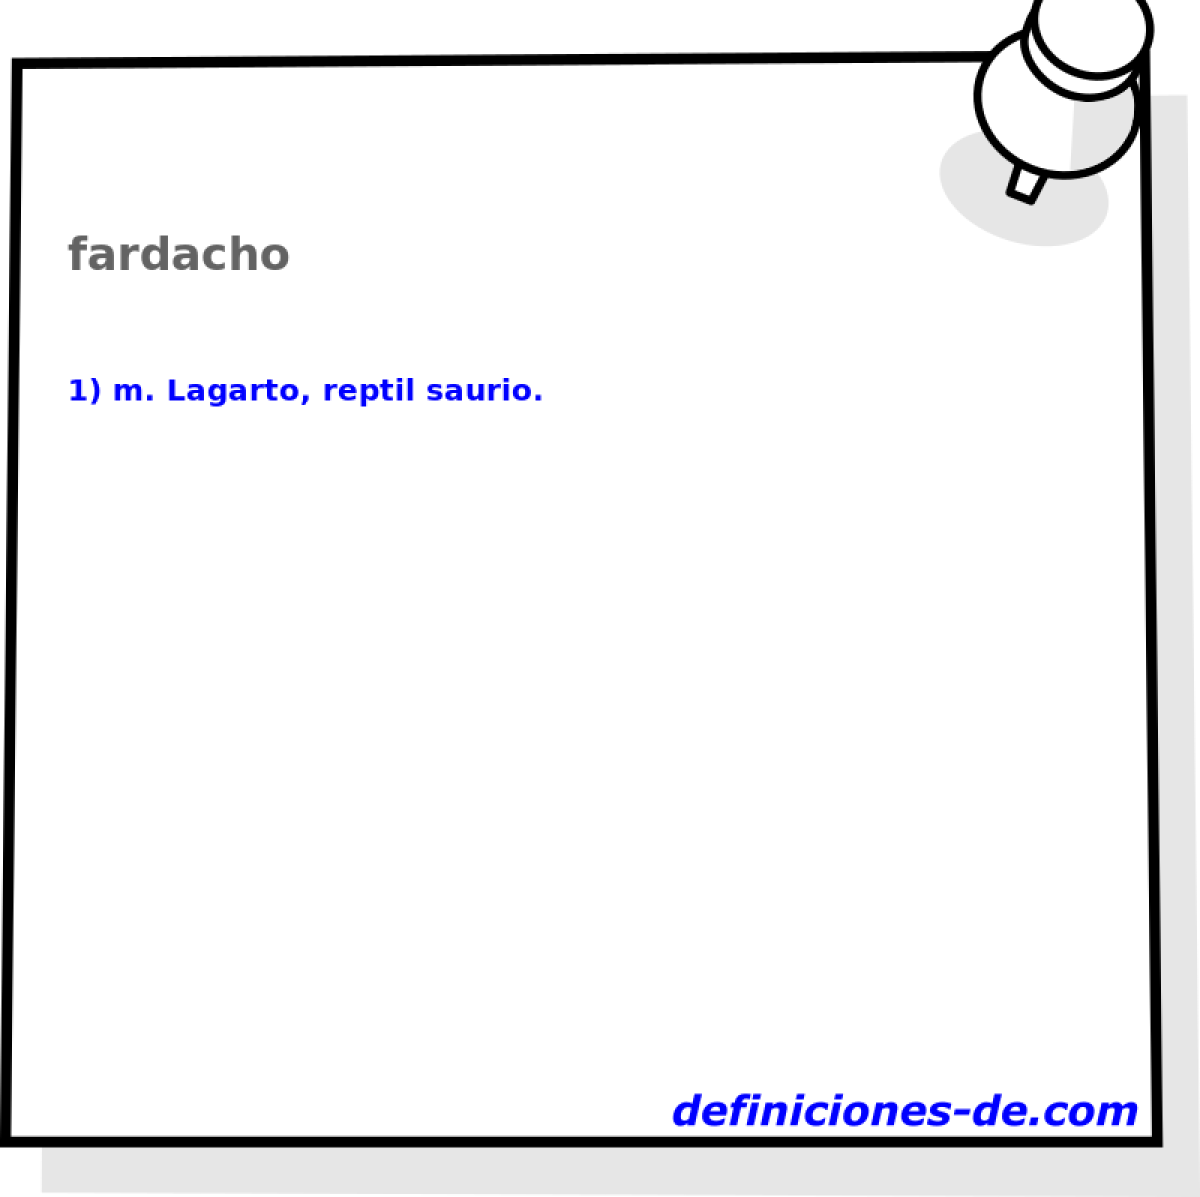 fardacho 